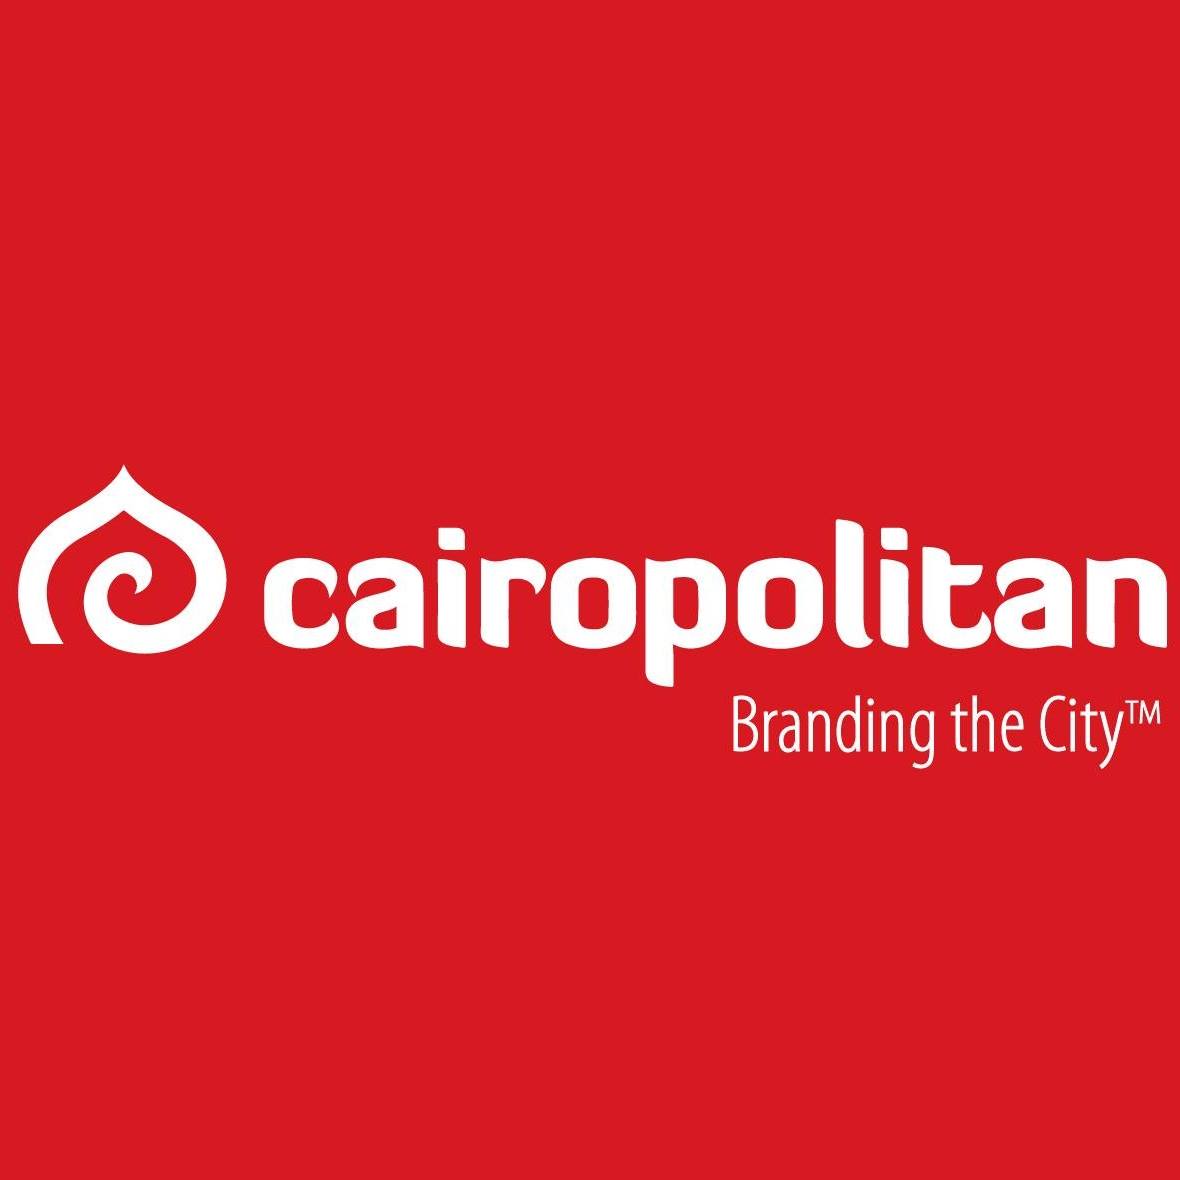 Cairopolitan